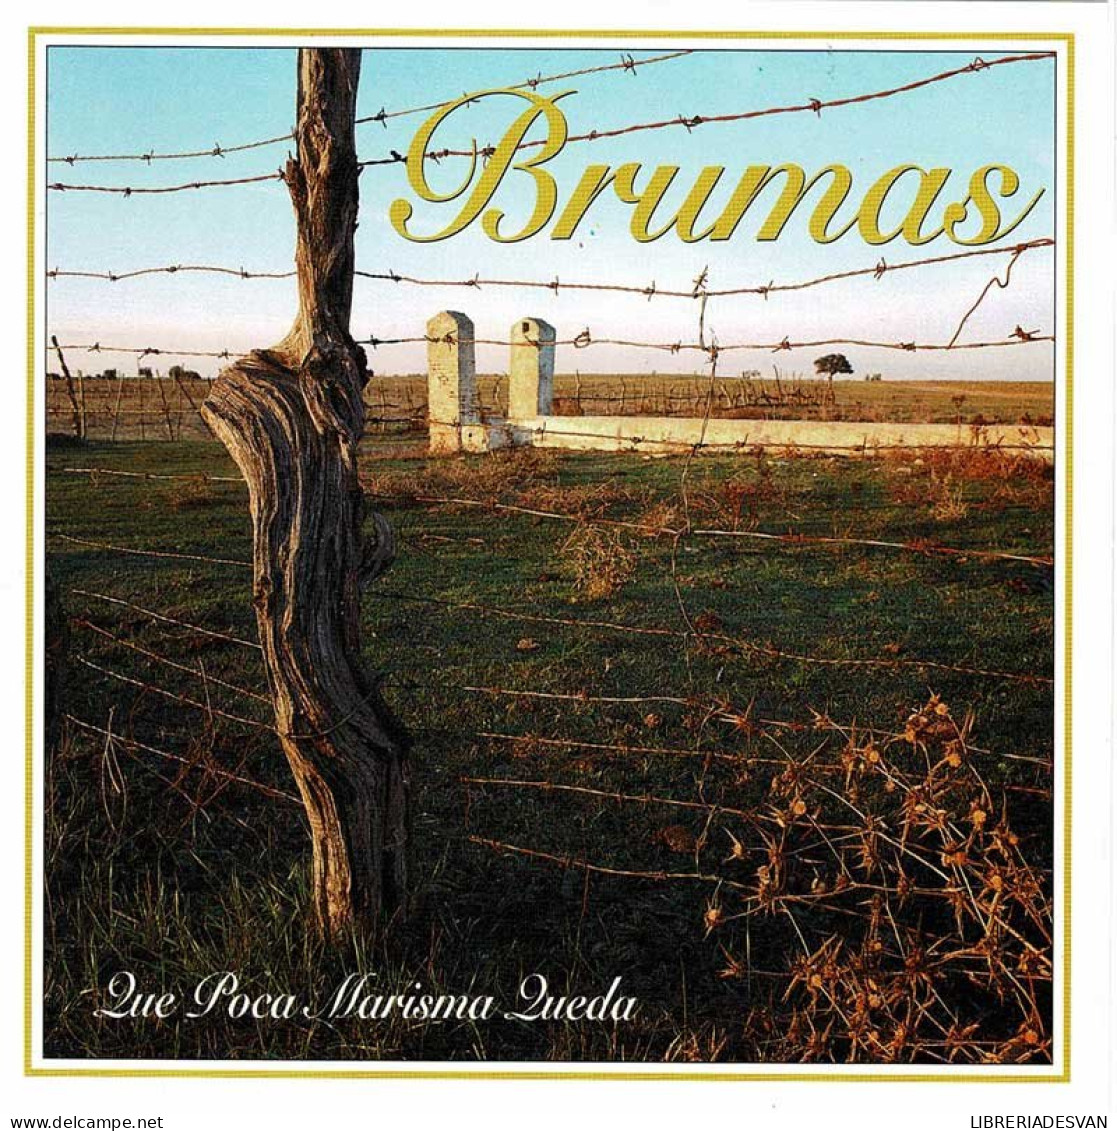 Brumas - Qué Poca Marisma Queda. CD - Sonstige - Spanische Musik